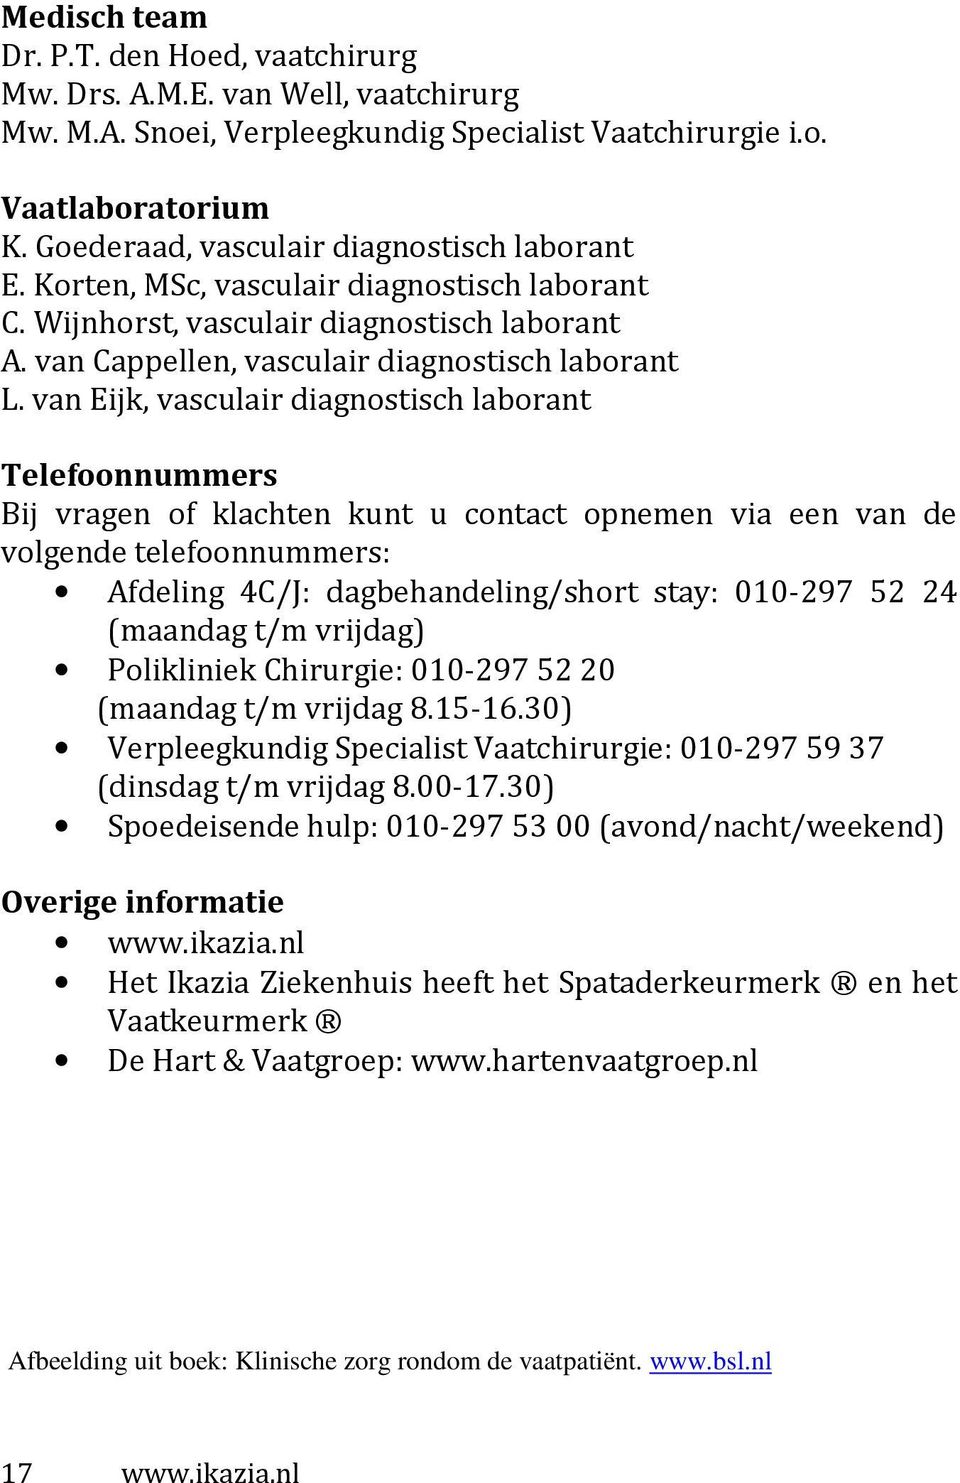 van Eijk, vasculair diagnostisch laborant Telefoonnummers Bij vragen of klachten kunt u contact opnemen via een van de volgende telefoonnummers: Afdeling 4C/J: dagbehandeling/short stay: 010-297 52